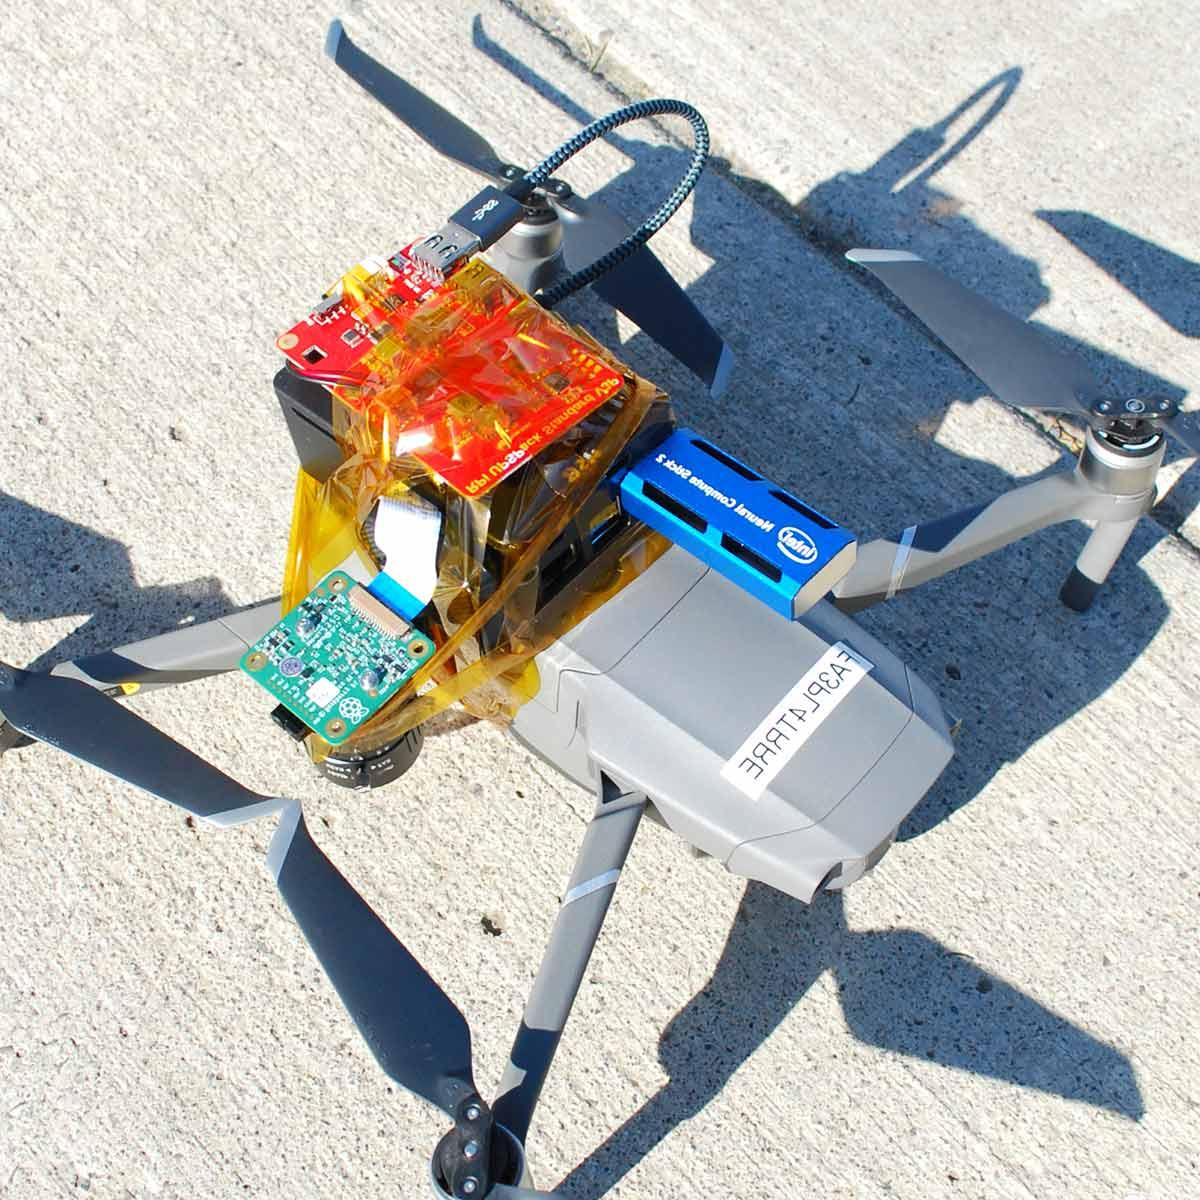 Capstone Project - Drone